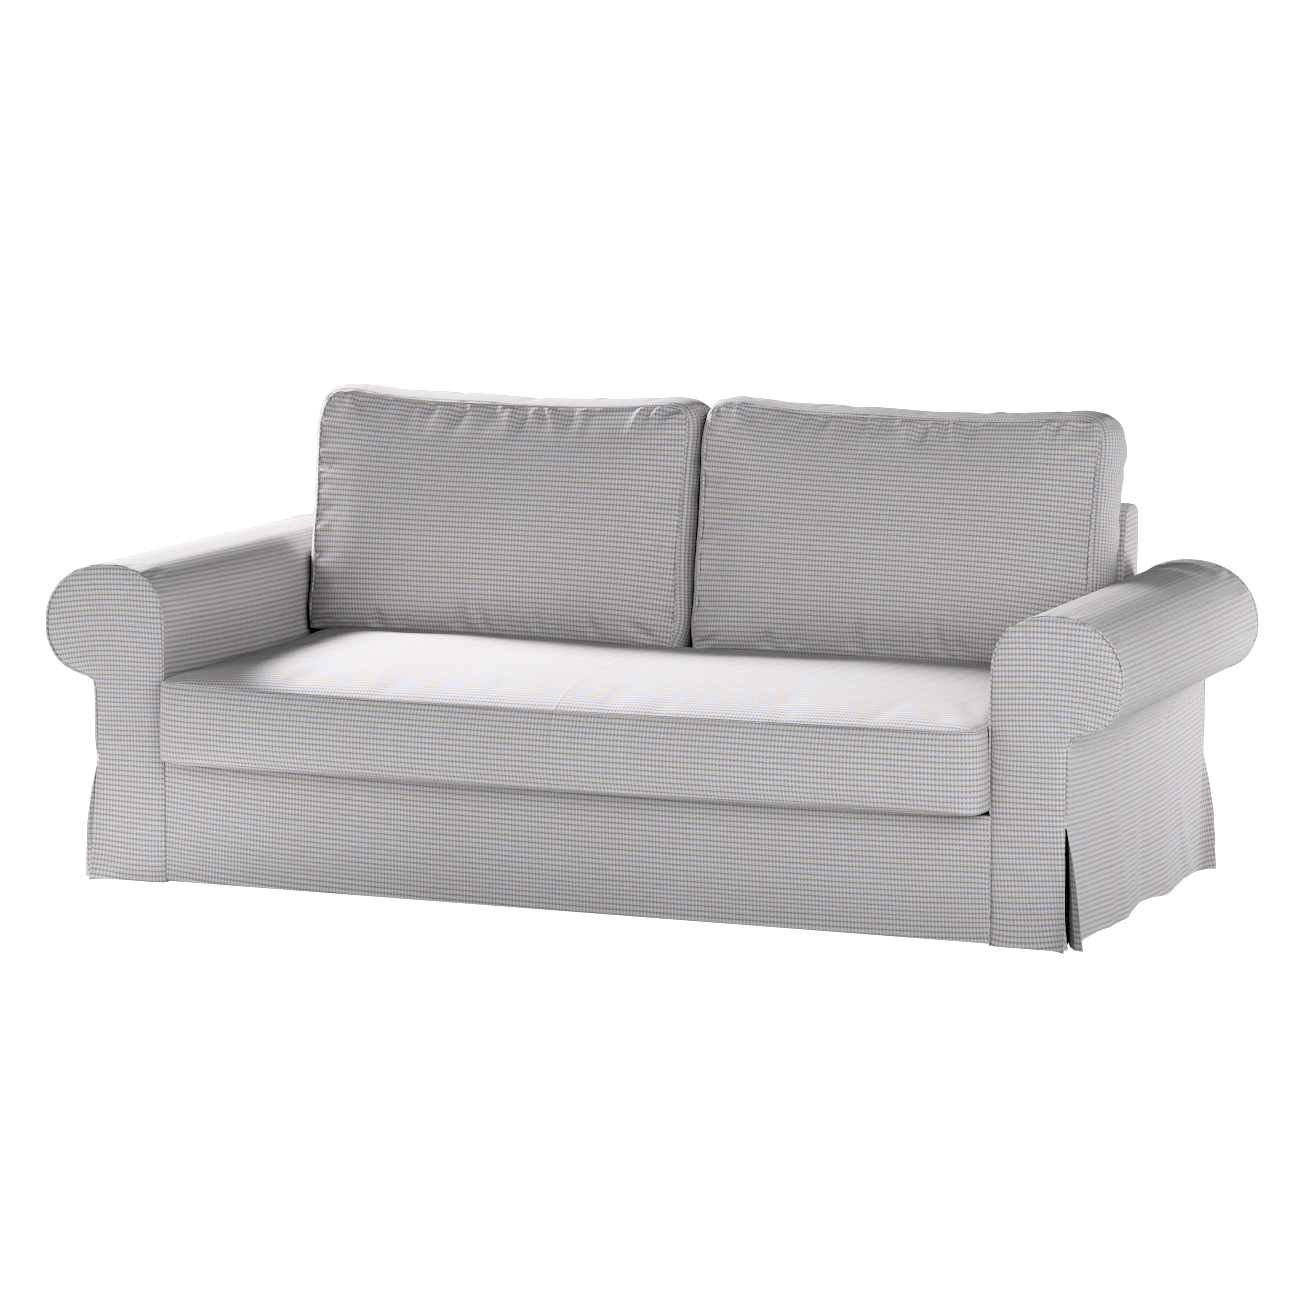 Bezug für Backabro 3-Sitzer Sofa ausklappbar, beige-blau, Bezug für Backabr günstig online kaufen